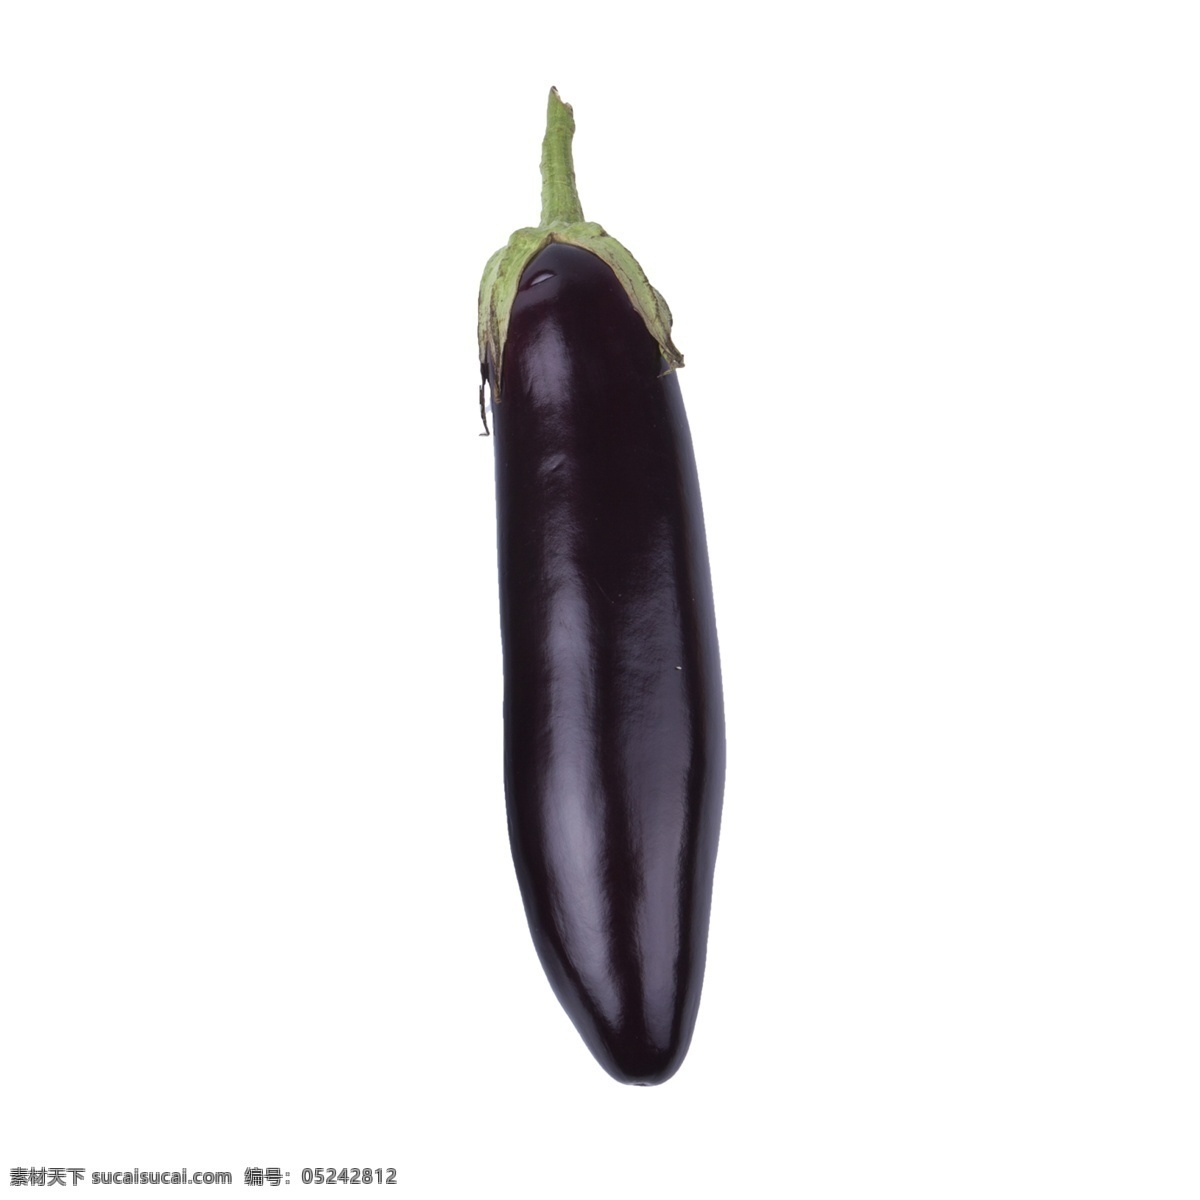 茄子 免 抠 一个生的茄子 紫色茄子 生的茄子 一个 紫色 新鲜的蔬菜 一个茄子